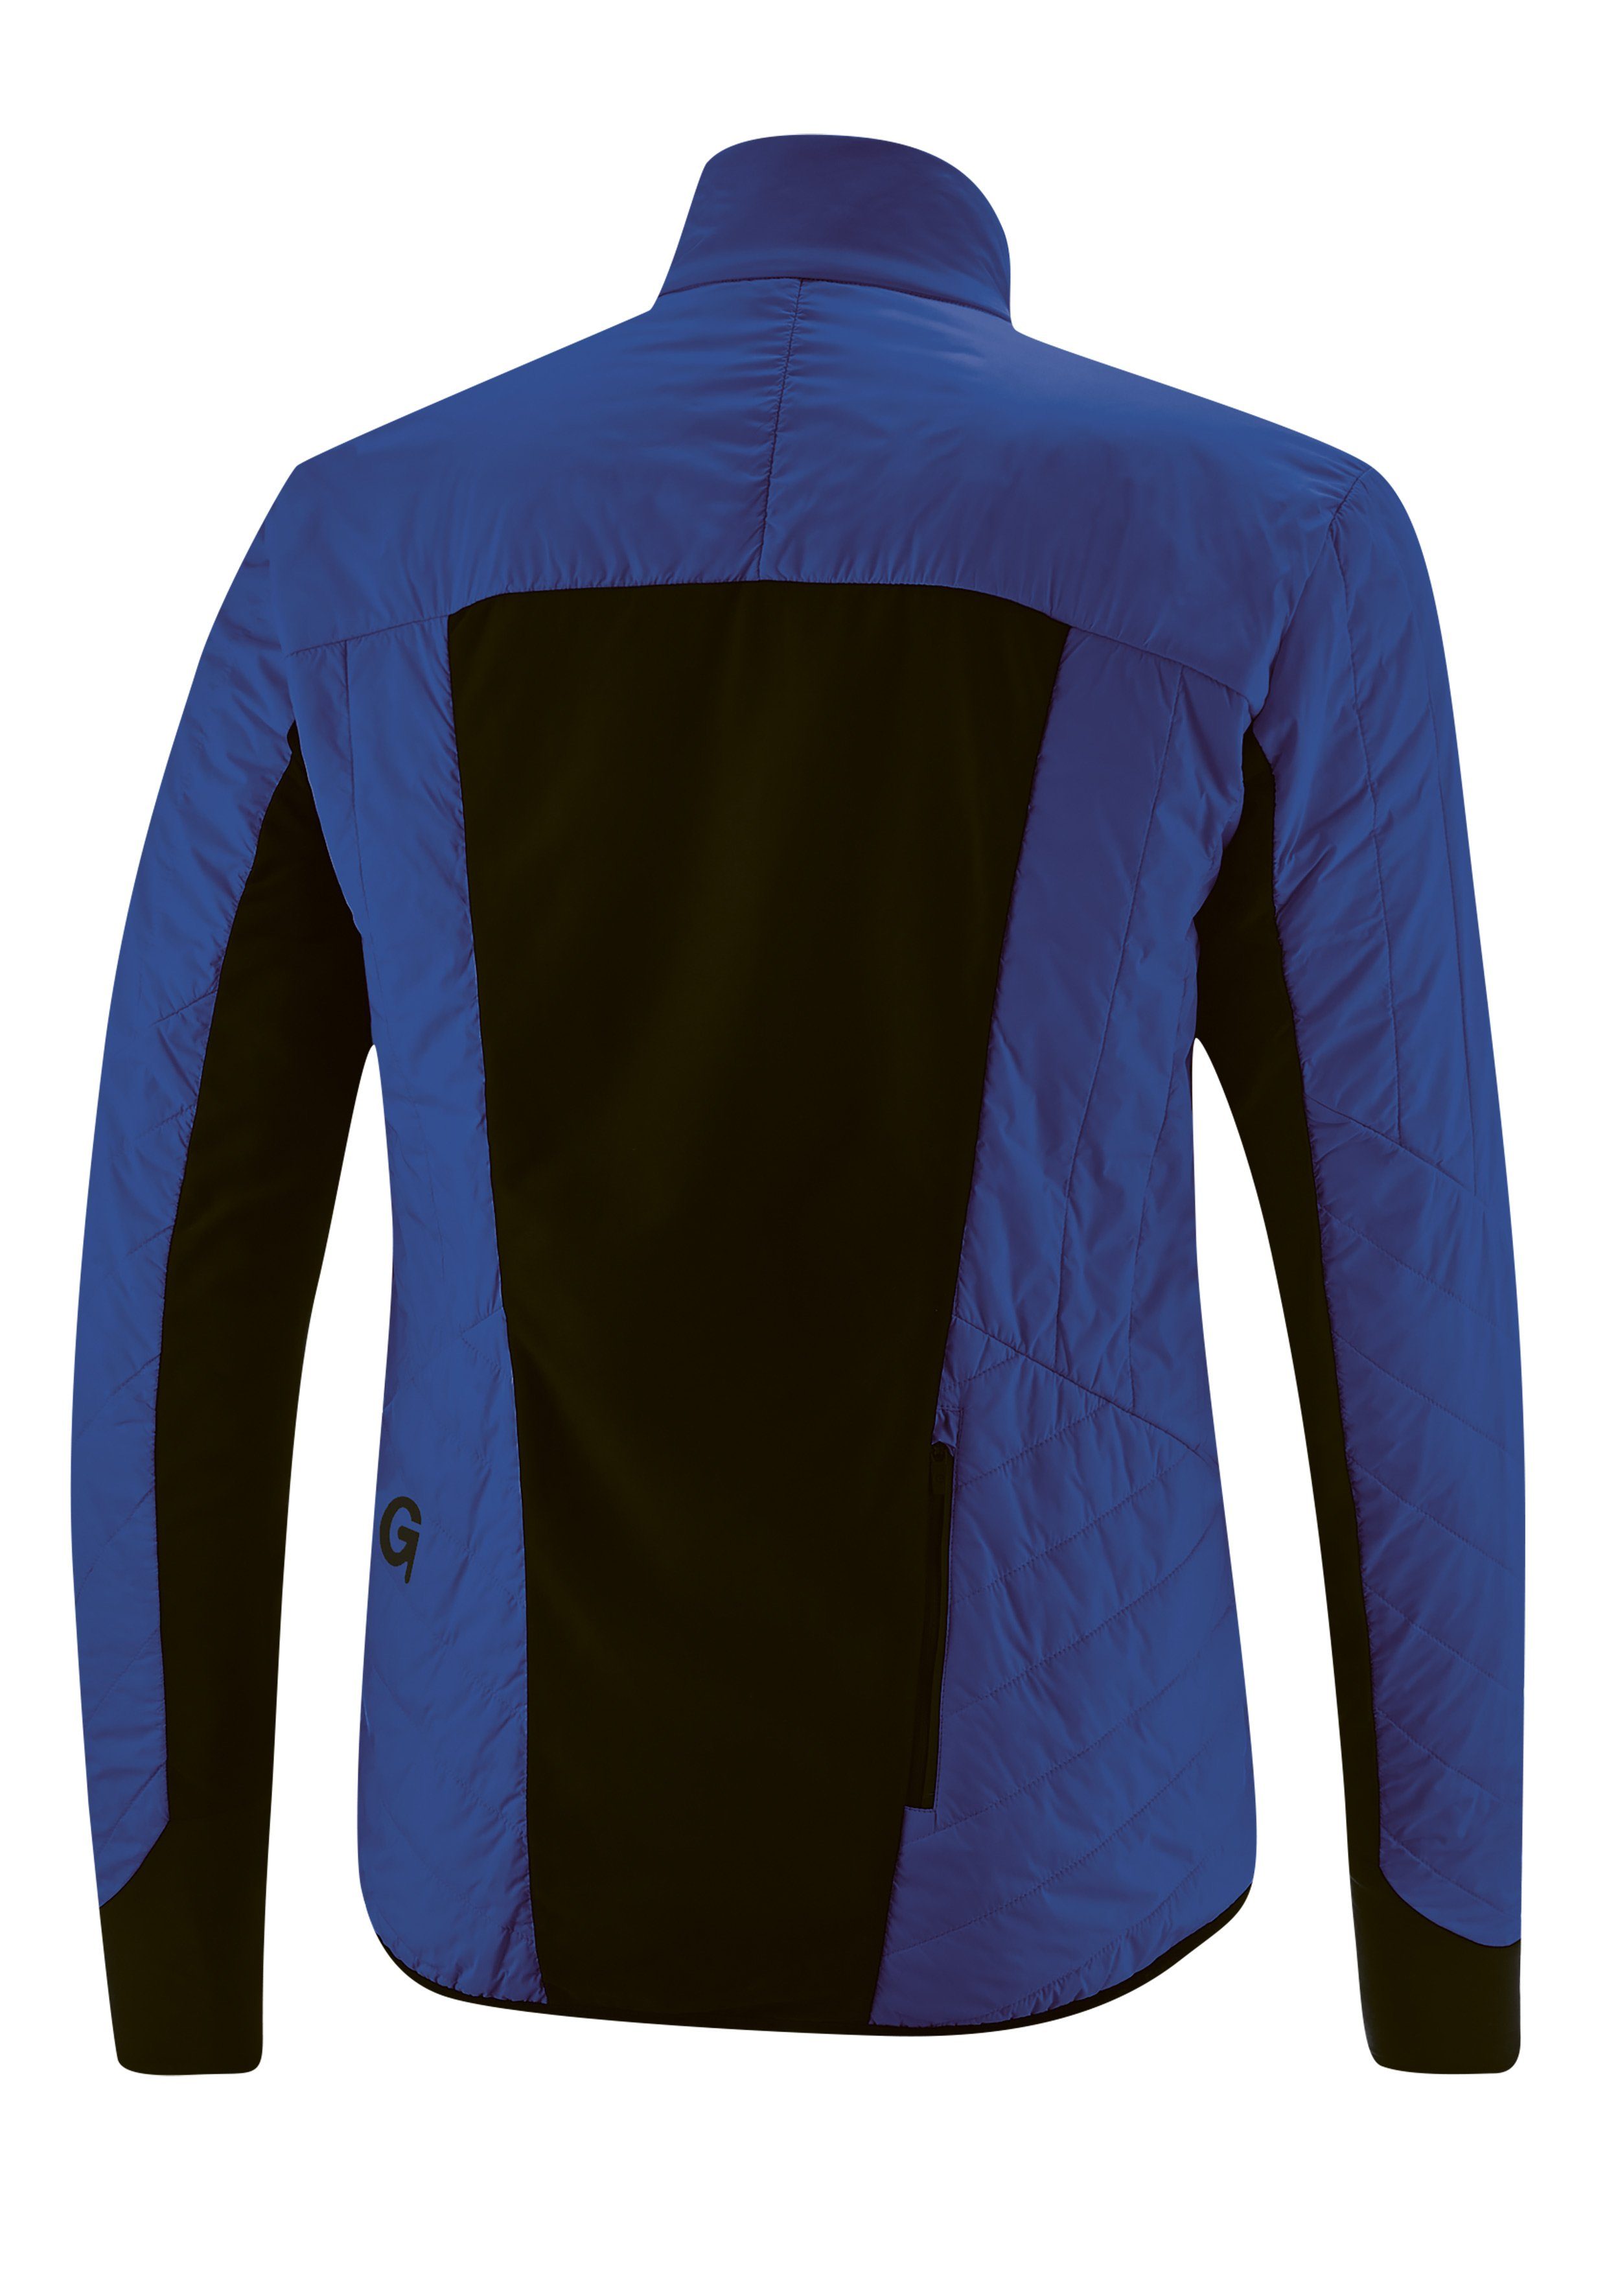 Gonso Fahrradjacke Tomar warm, Primaloft-Jacke, kobaltblau atmungsaktiv winddicht Herren und